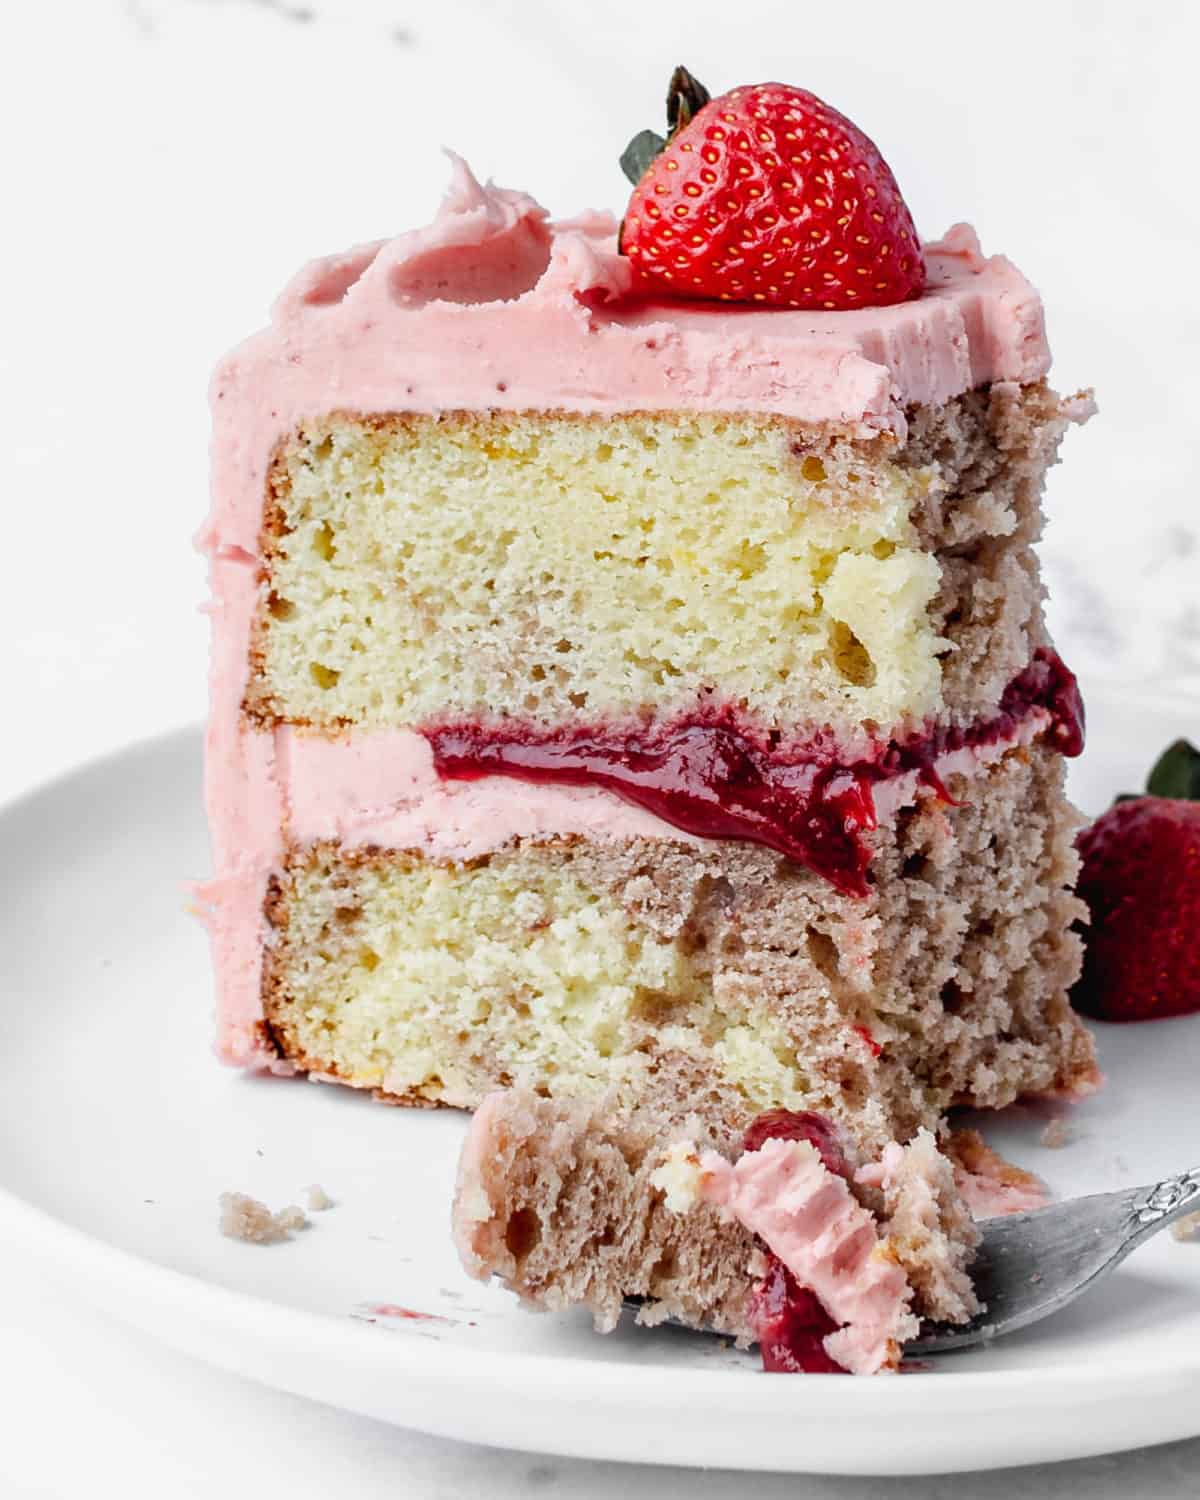 A bite of lemon strawberry cake up close.